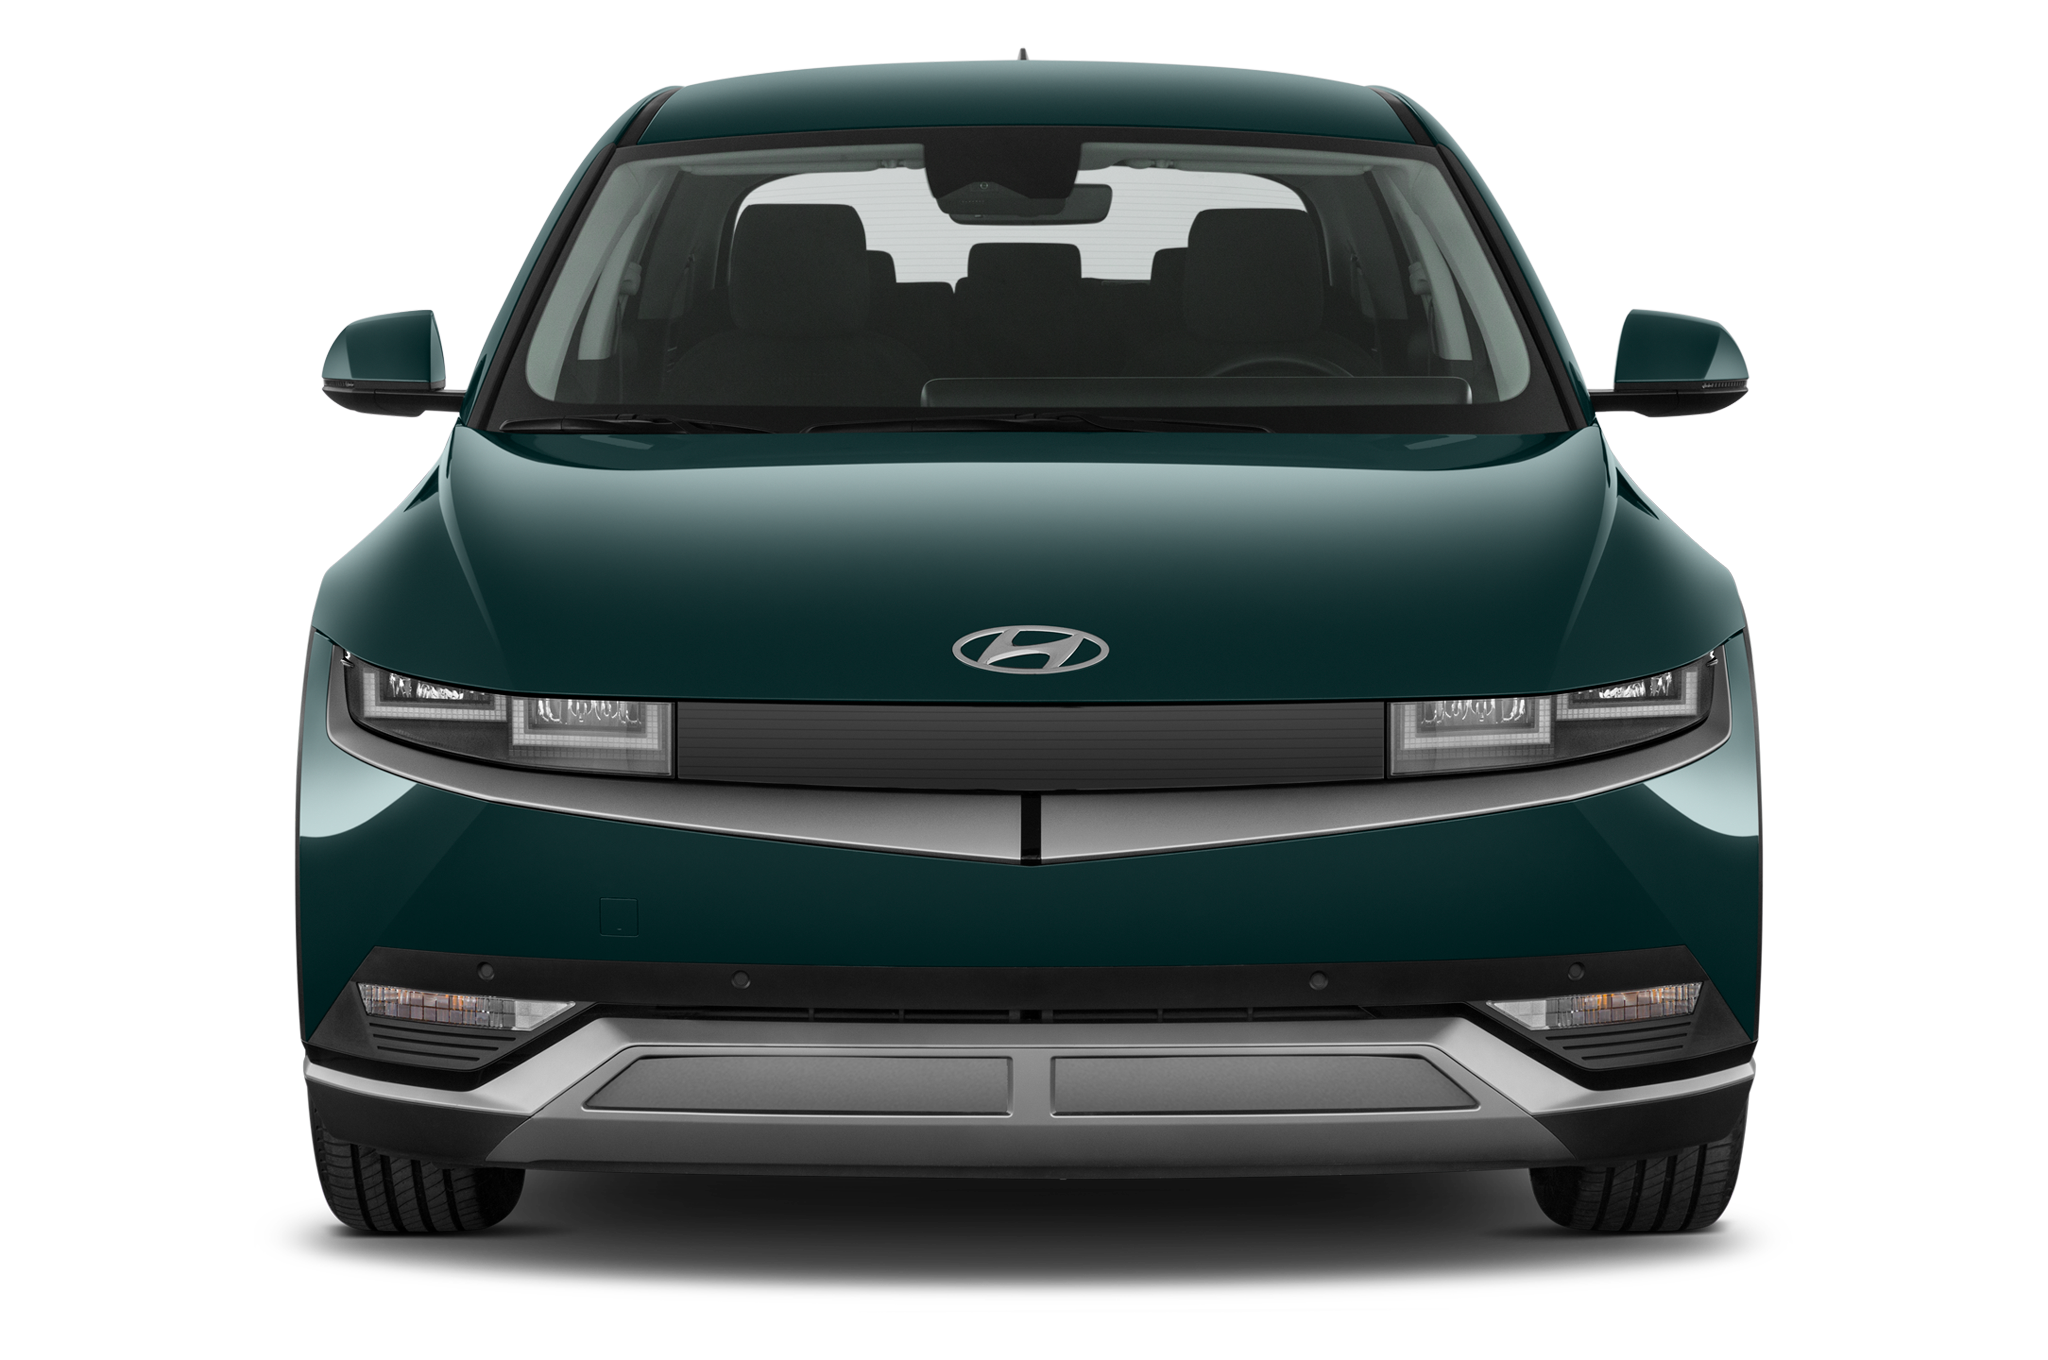 Hyundai Ioniq 5 (Baujahr 2022) - 5 Türen Frontansicht